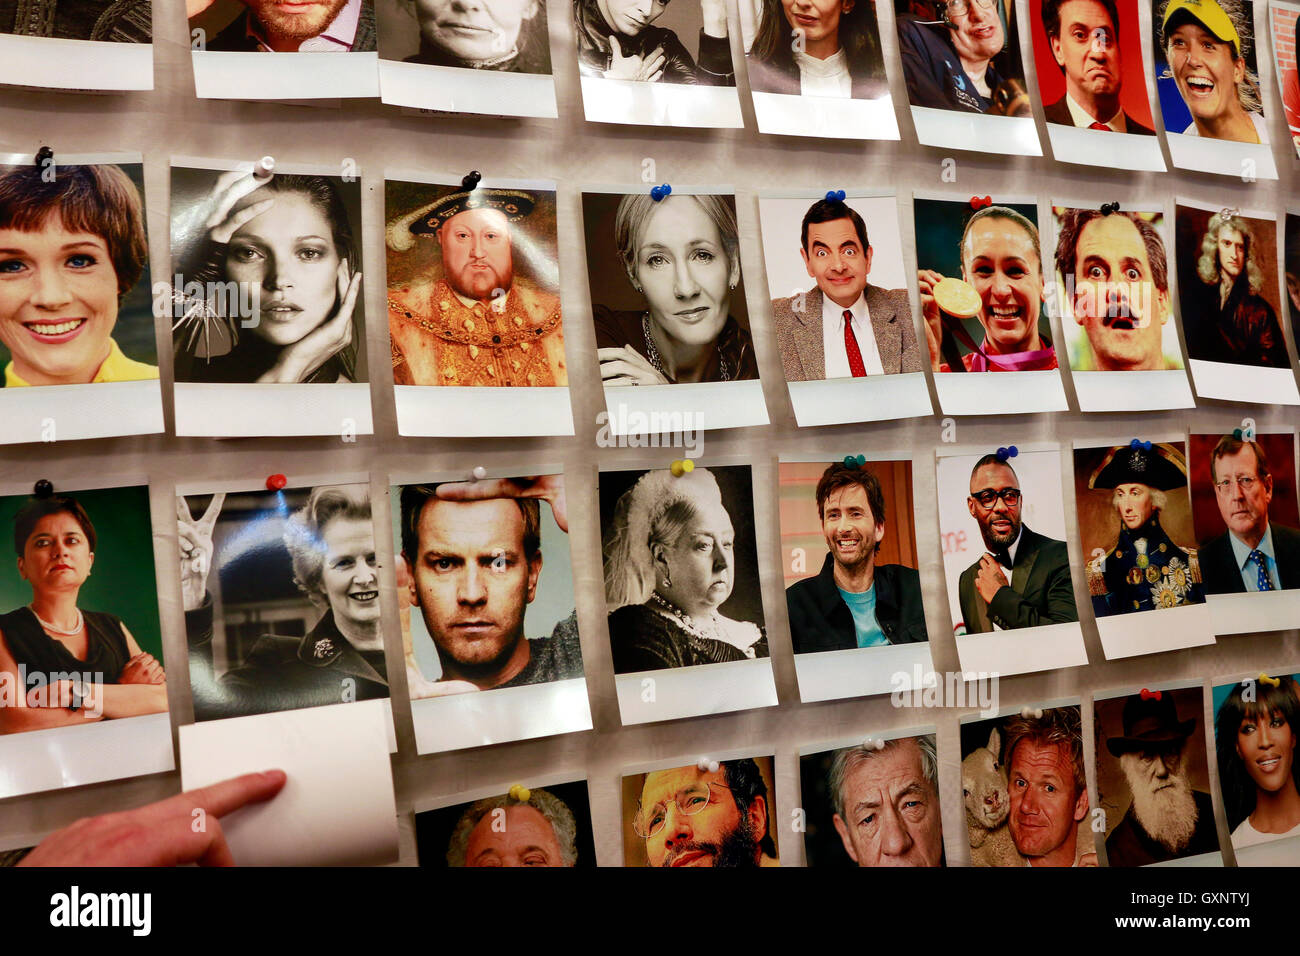 Werbung Gegen Den Austritt: Bilder Britischer Prominenter Wie Mr. Bean, Henry 8, Joanne, Kate Moss, William Shakespeare, Stockfoto